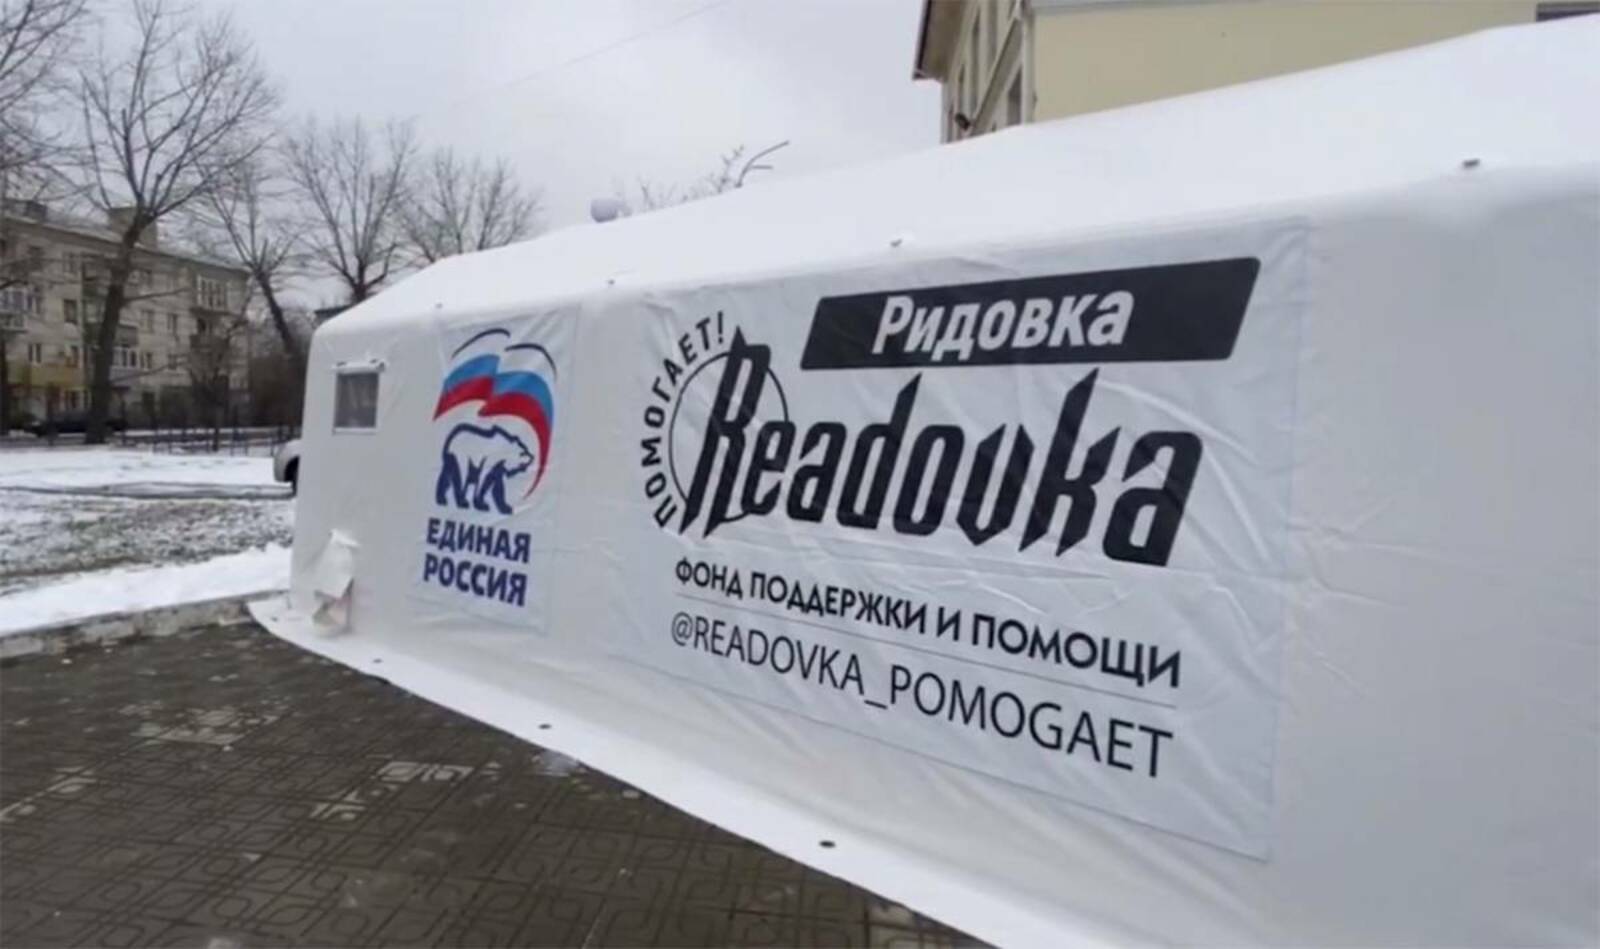 «Единая Россия» и фонд «Readovka помогает» открыли пункт обогрева для жителей Северодонецка